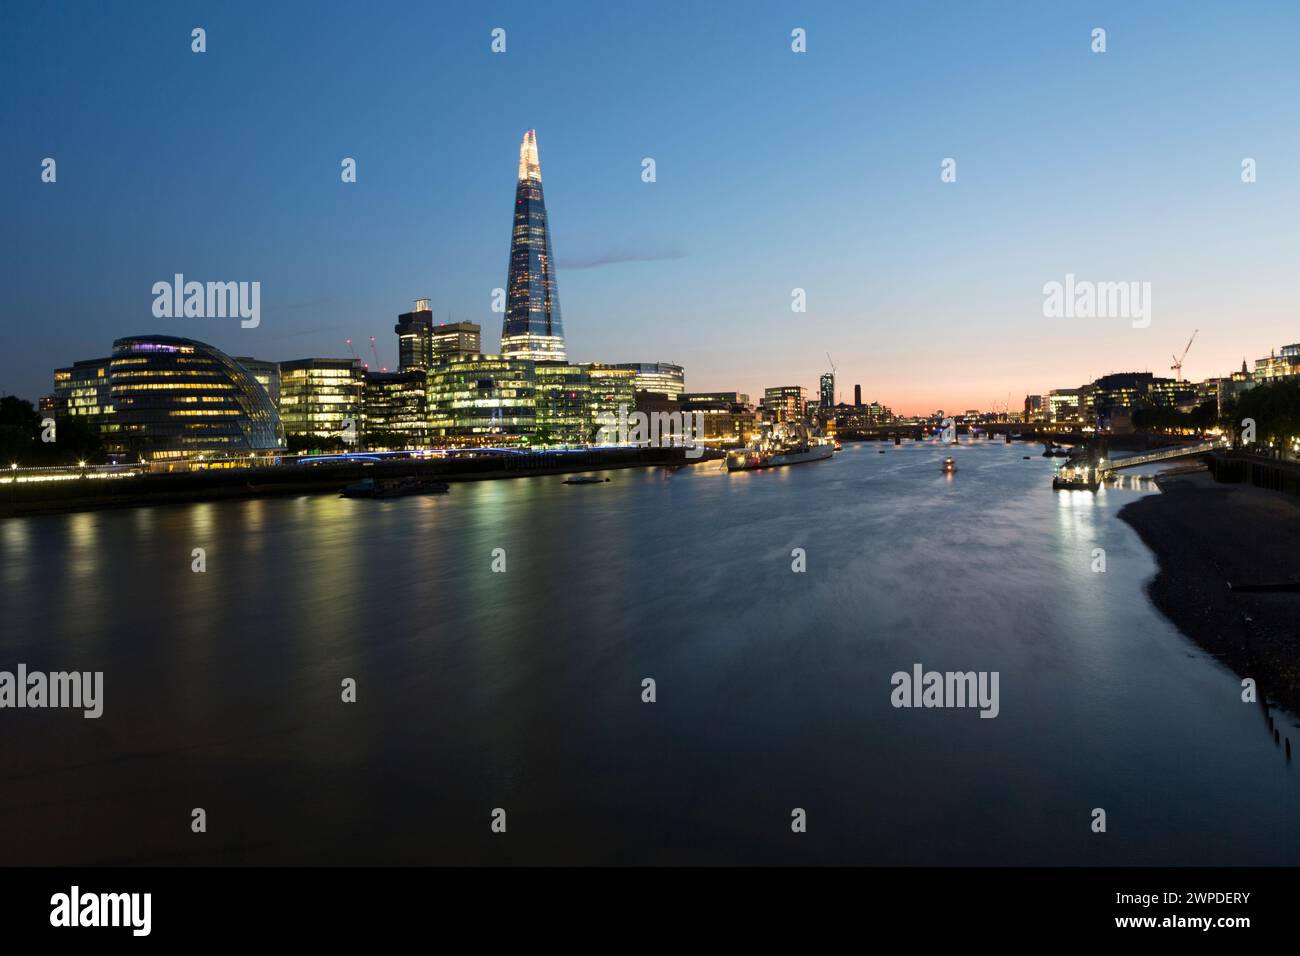 Regno Unito, Londra, il Tamigi e Southbank con lo Shard al crepuscolo. Foto Stock